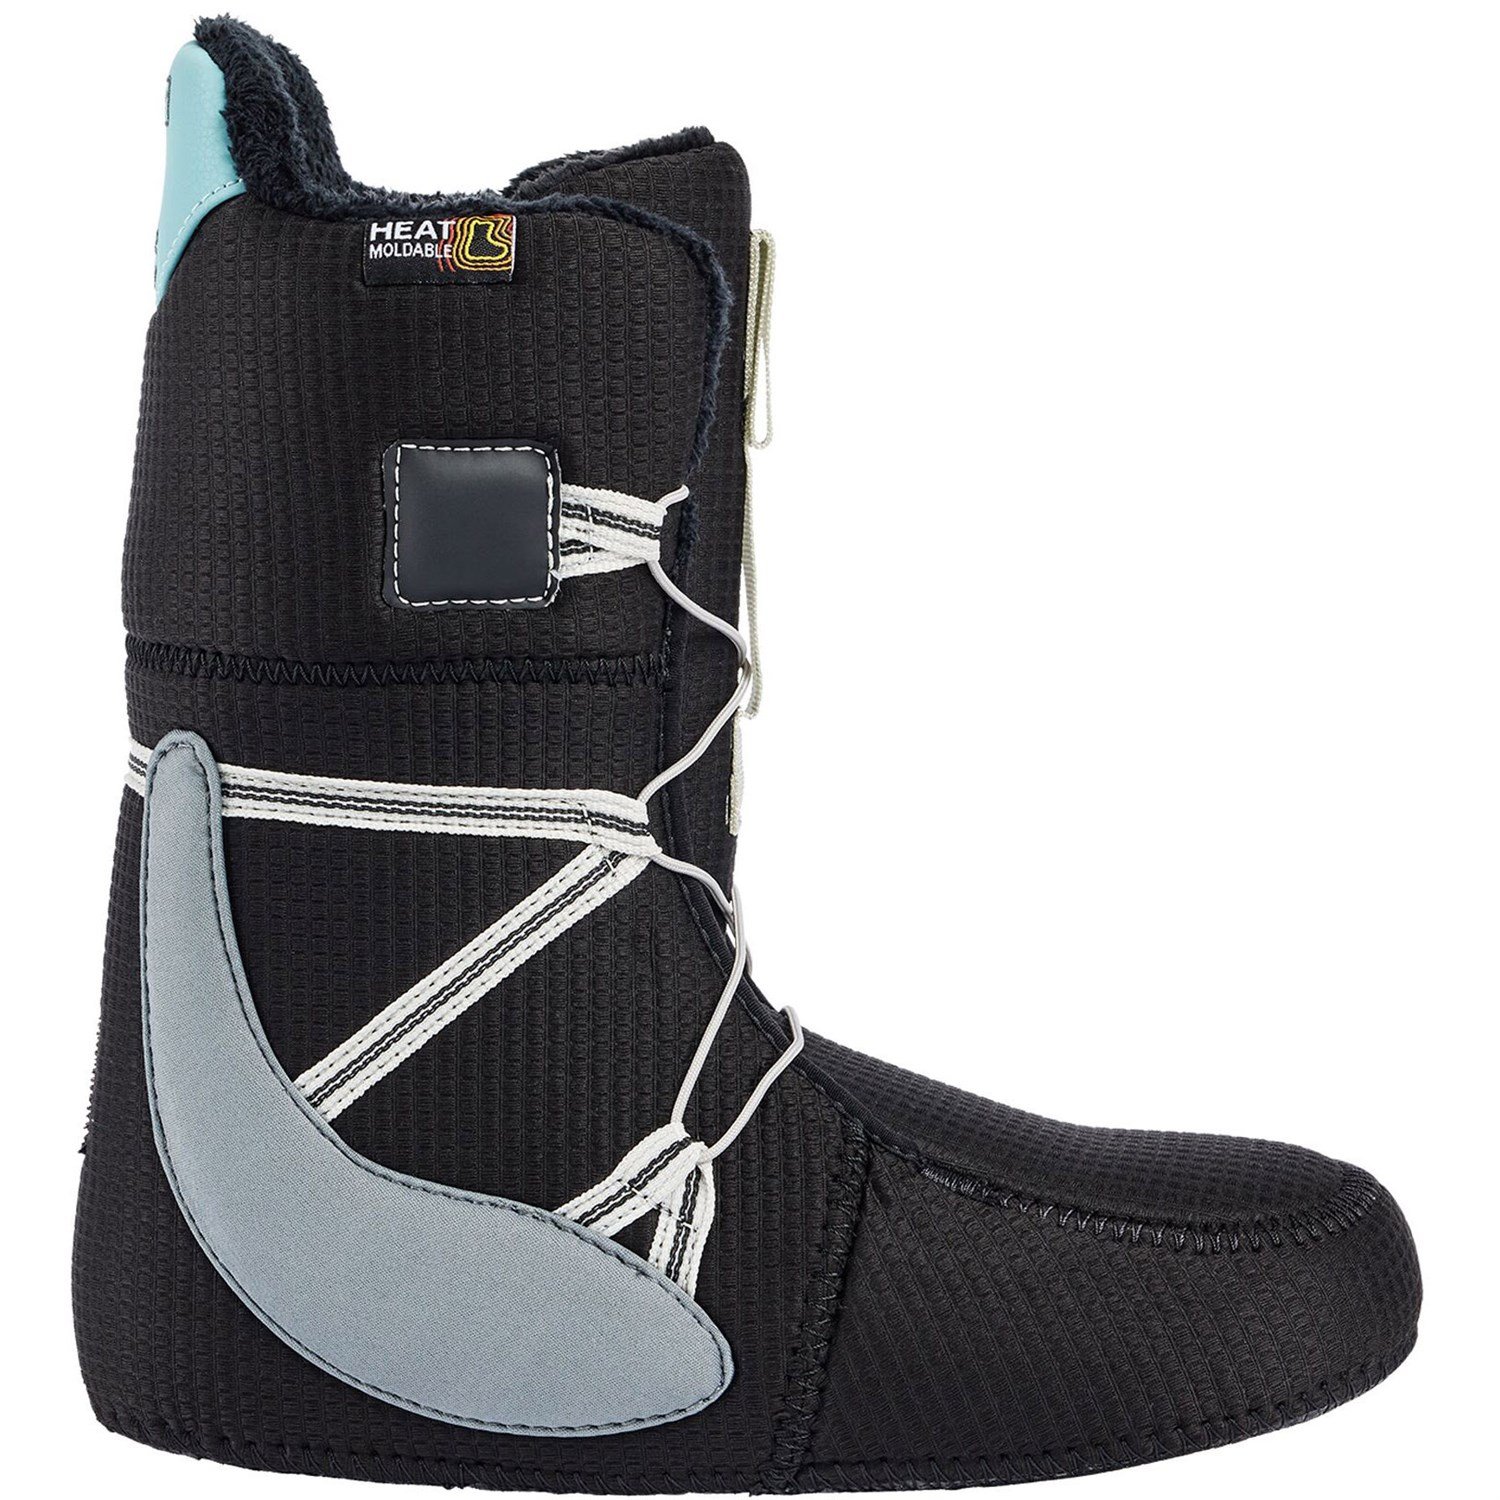 Burton Mint Boa Snowboard Boots - Women's | evo